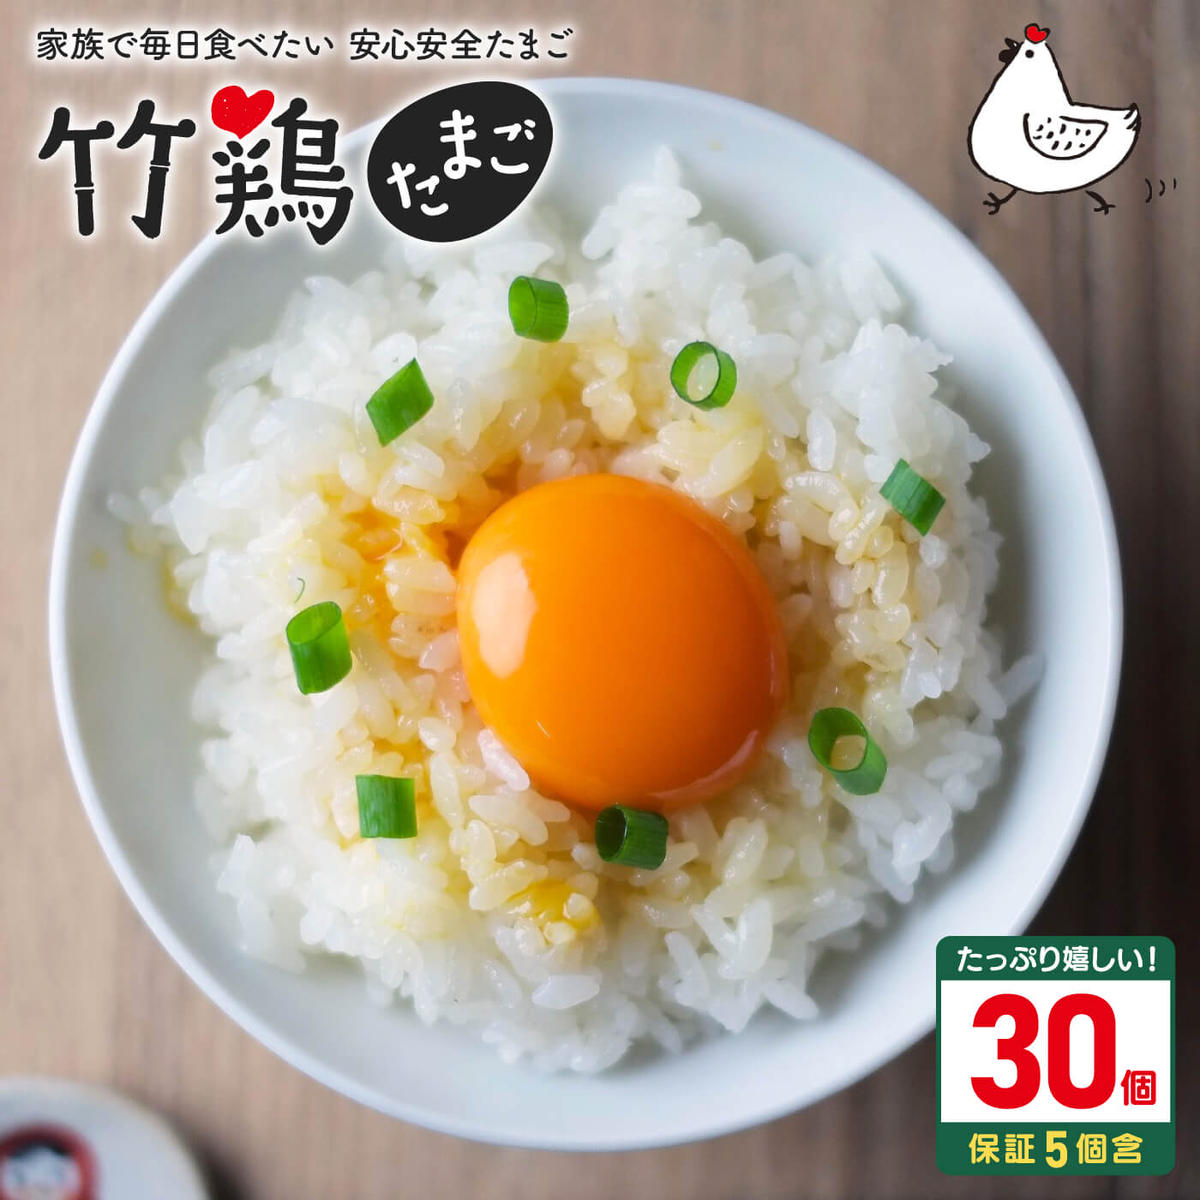 カレーめん スープ付 20袋(20食分)入【05151】 / 宮城県白石市